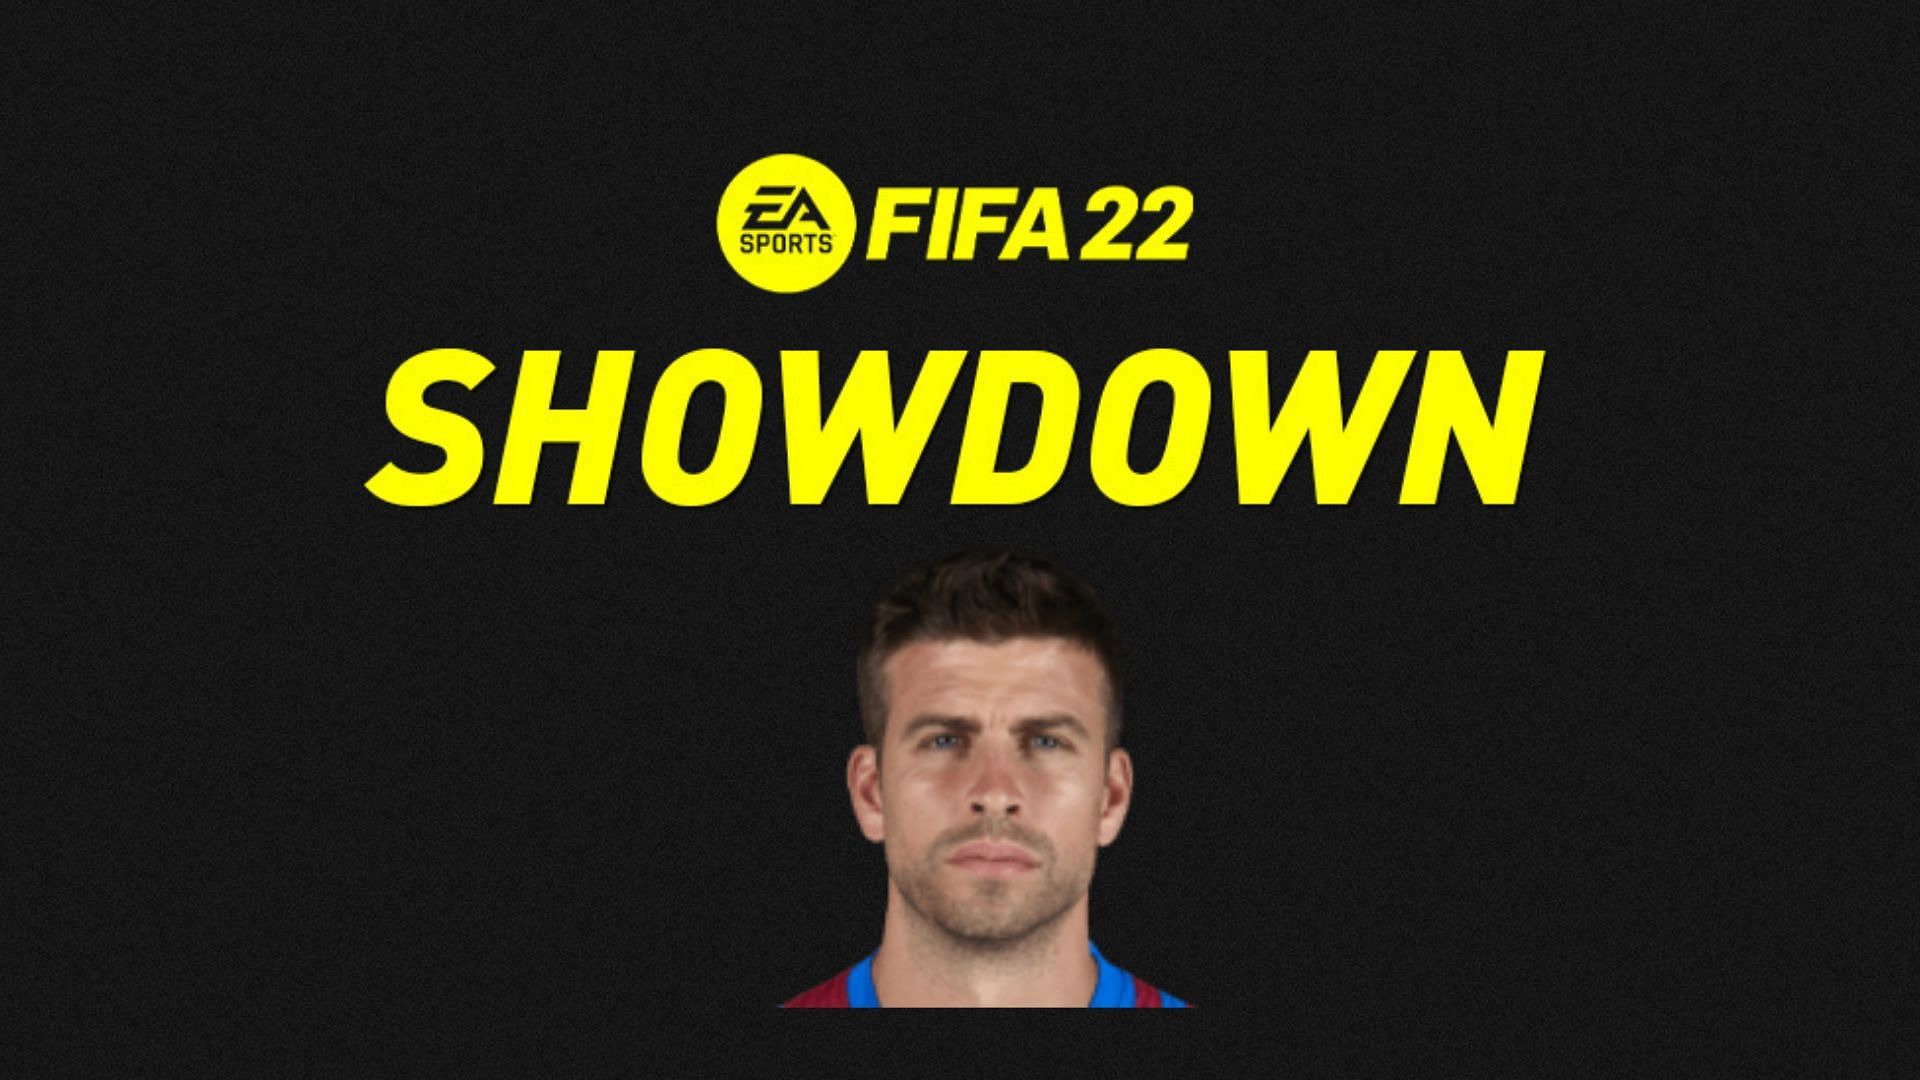 Gerard Pique Showdown SBC is live in FIFA 22 Ultimate Team (Image via Sportskeeda)